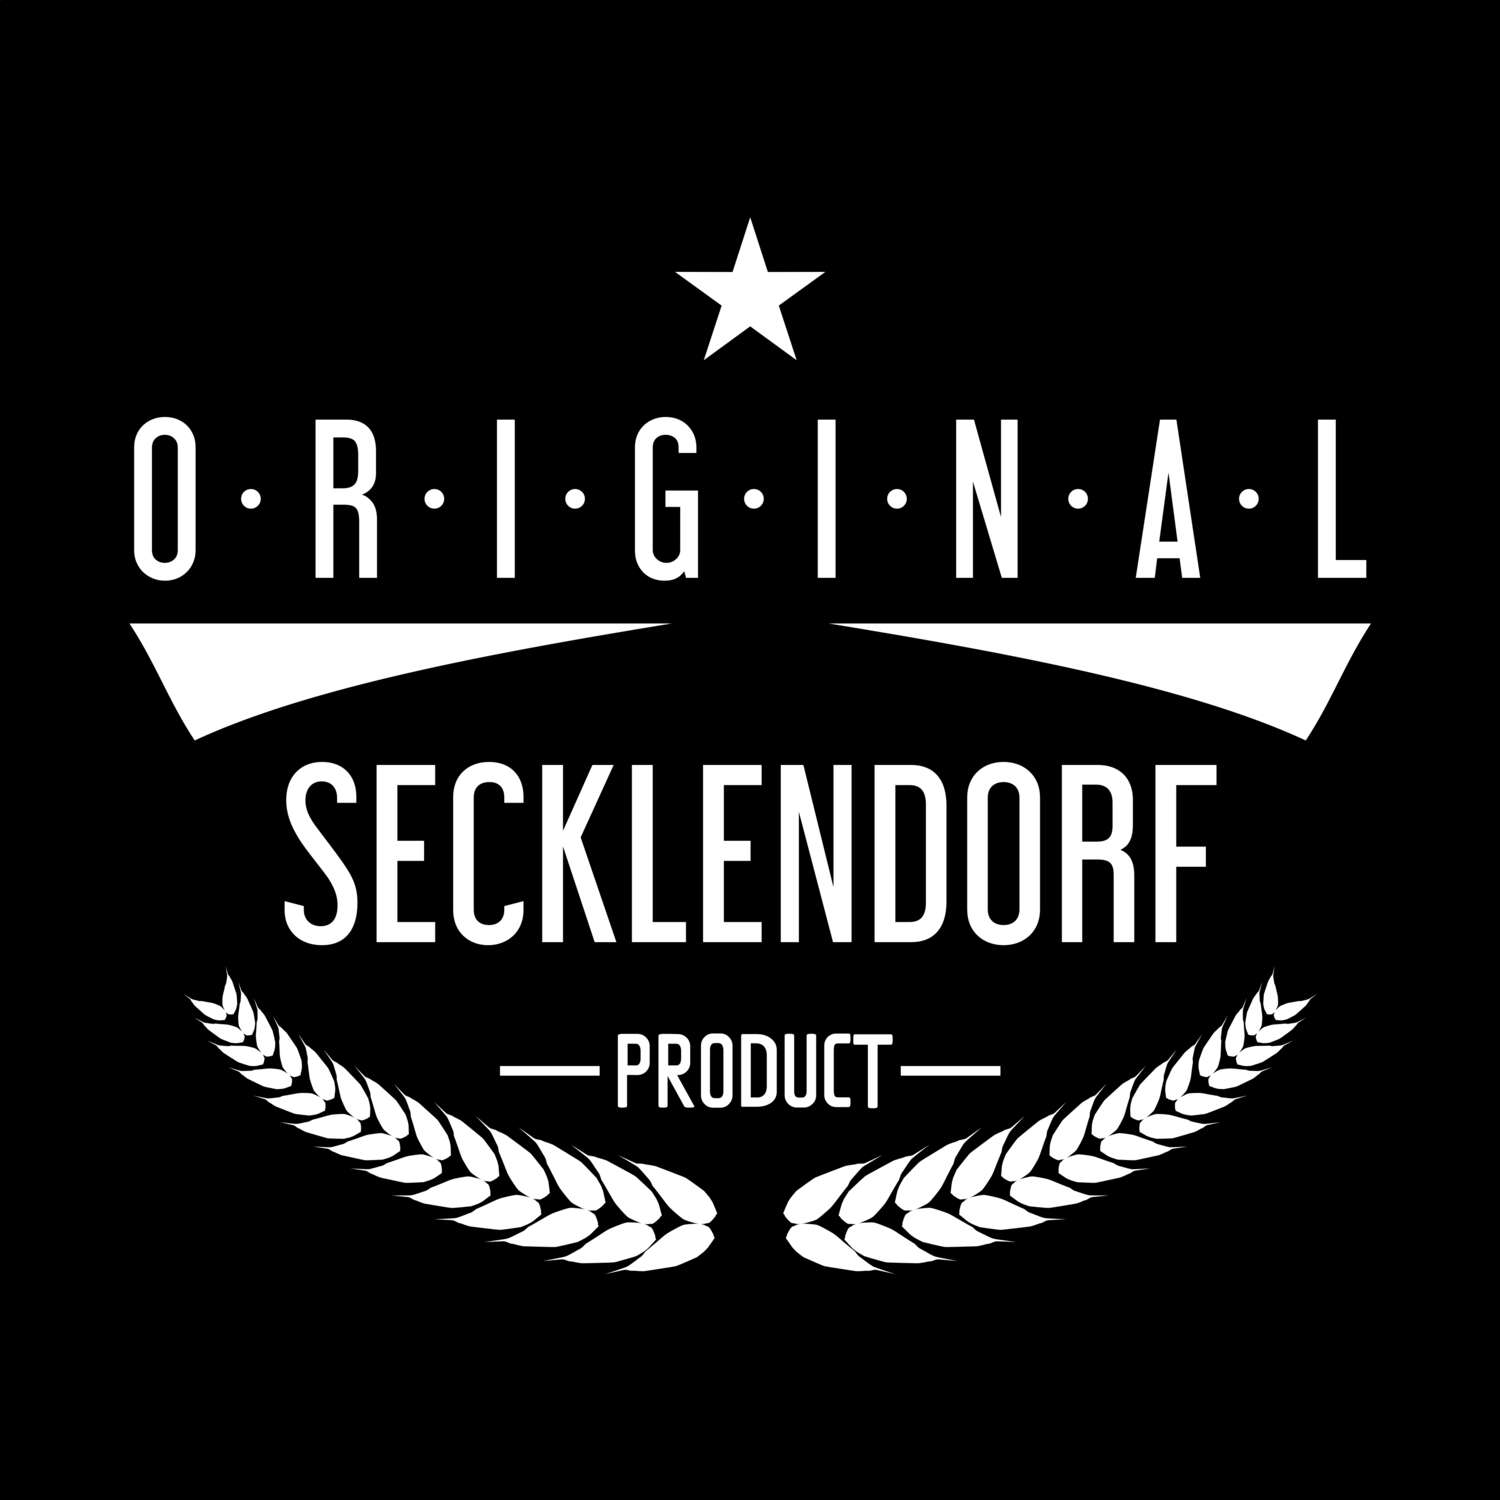 Secklendorf T-Shirt »Original Product«